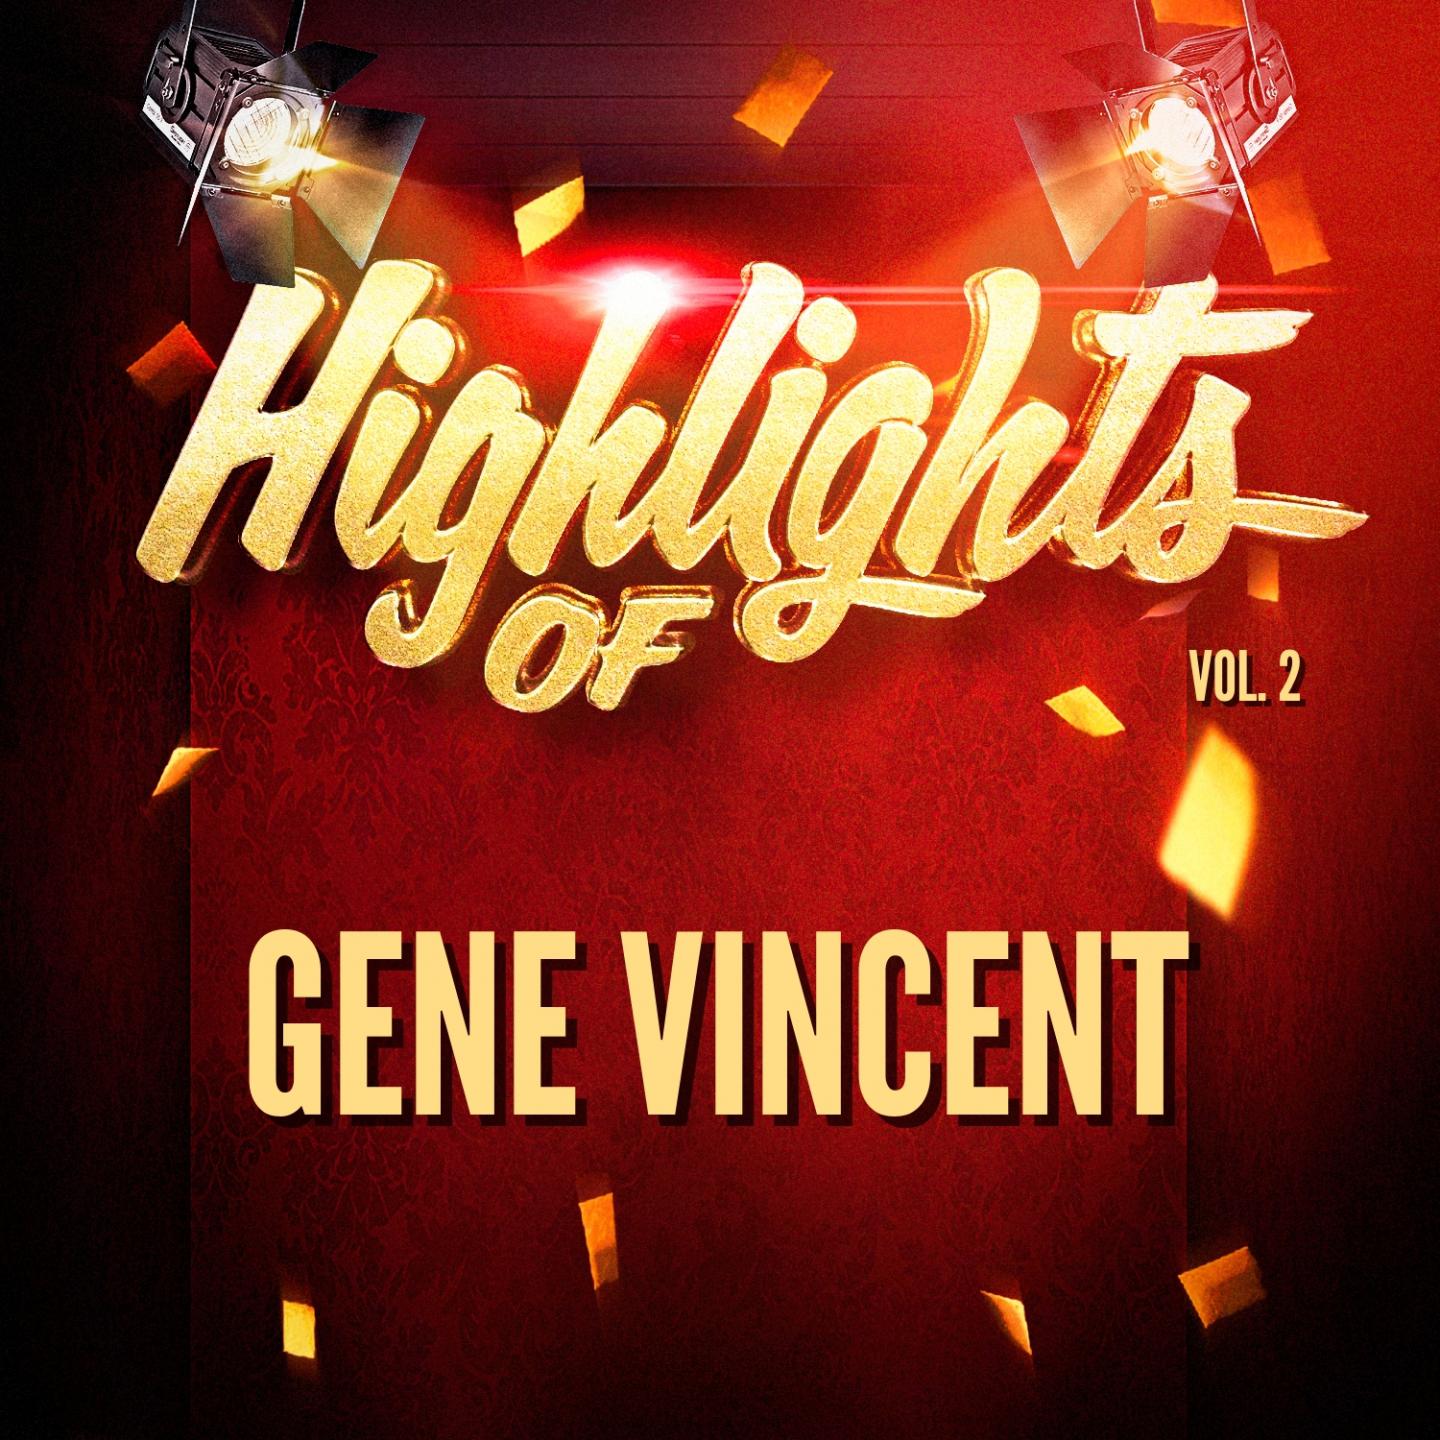 Highlights of Gene Vincent, Vol. 2